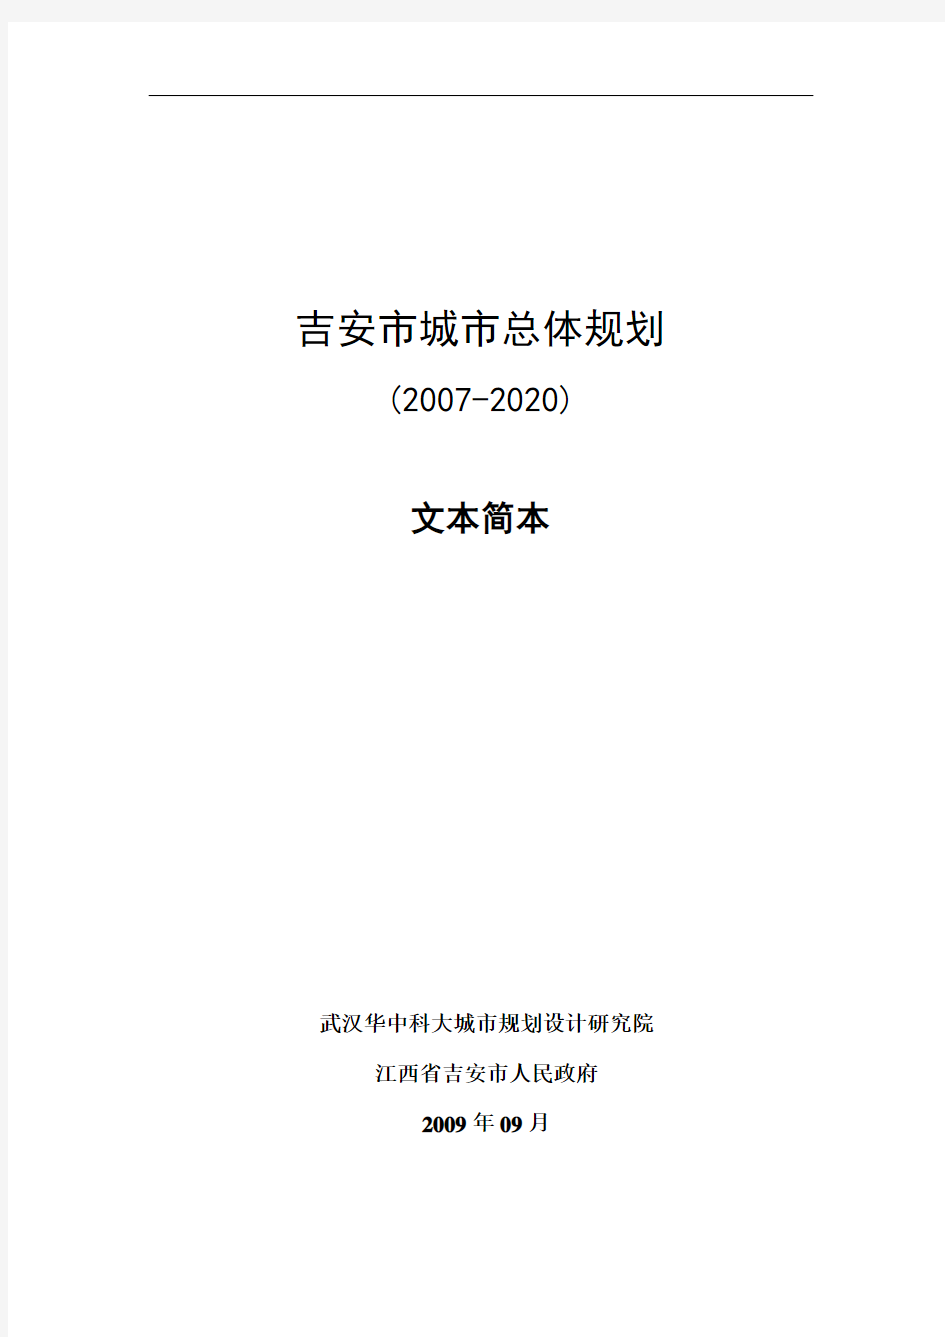 最新吉安-2020年总体规划